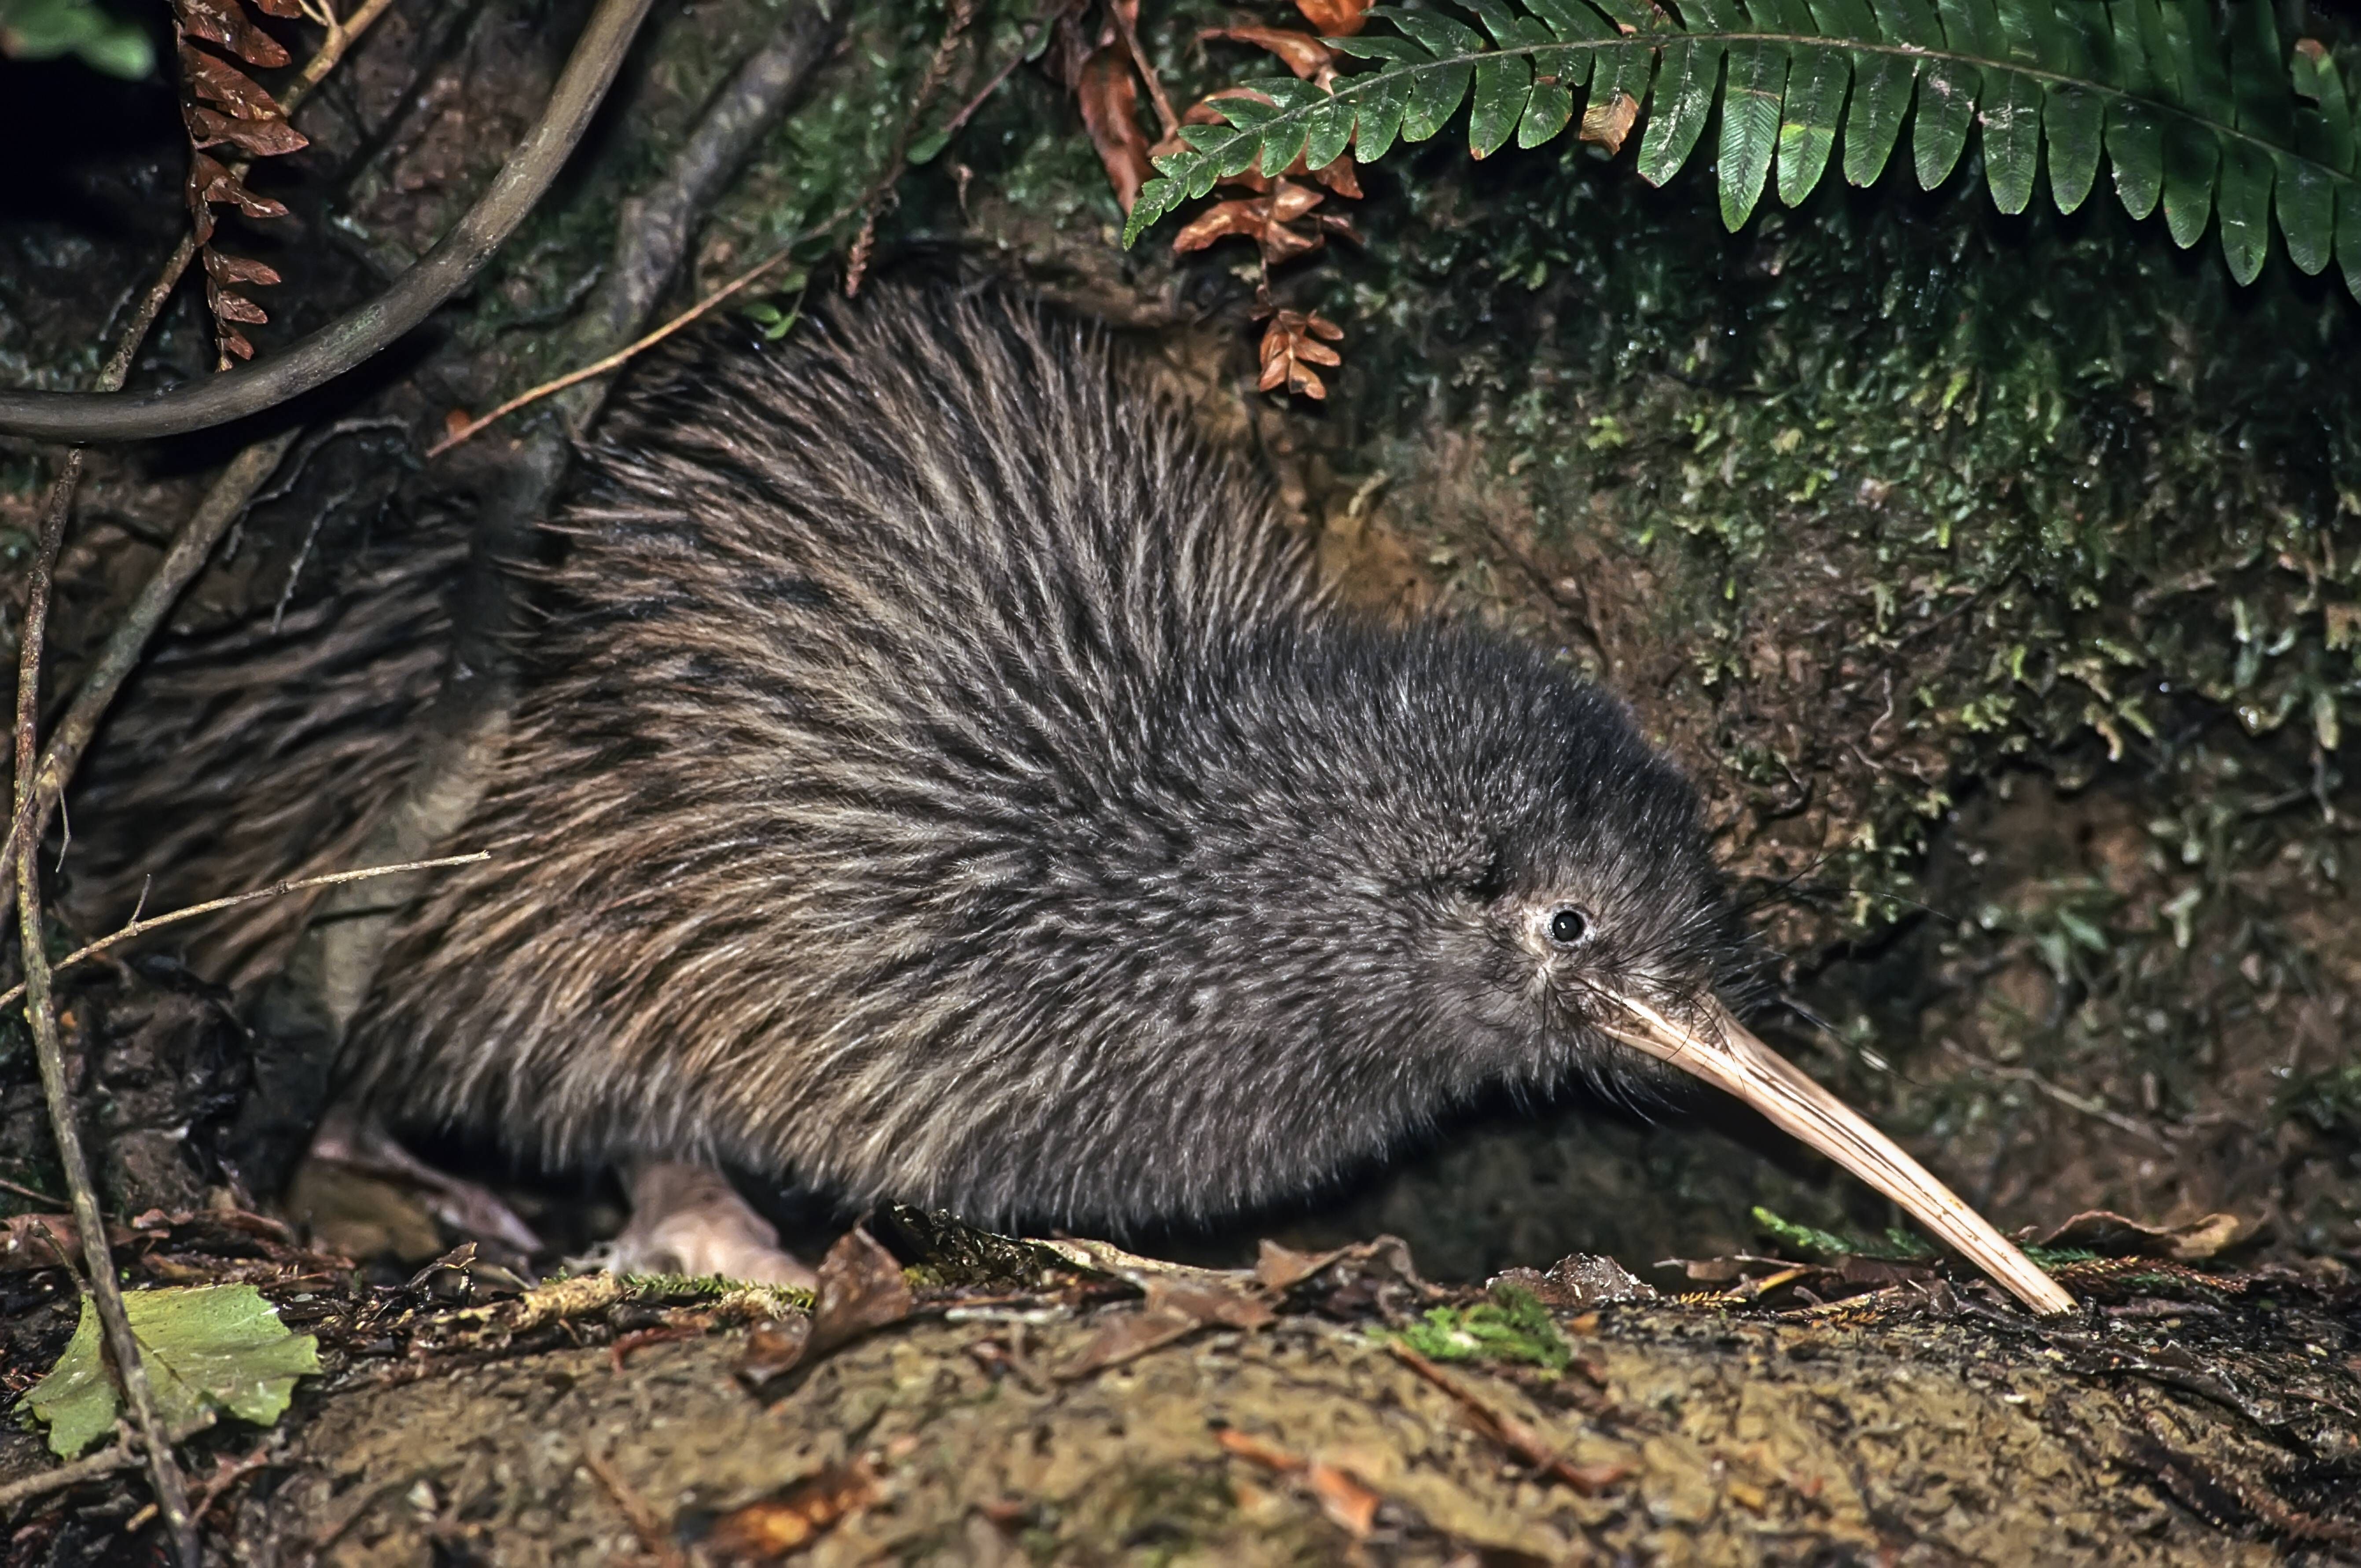 Der Okaritokiwi, Rowi oder Okarito-Streifenkiwi lebt im Westen der Südinsel Neuseelands. Er wird maximal 55 Zentimeter lang.